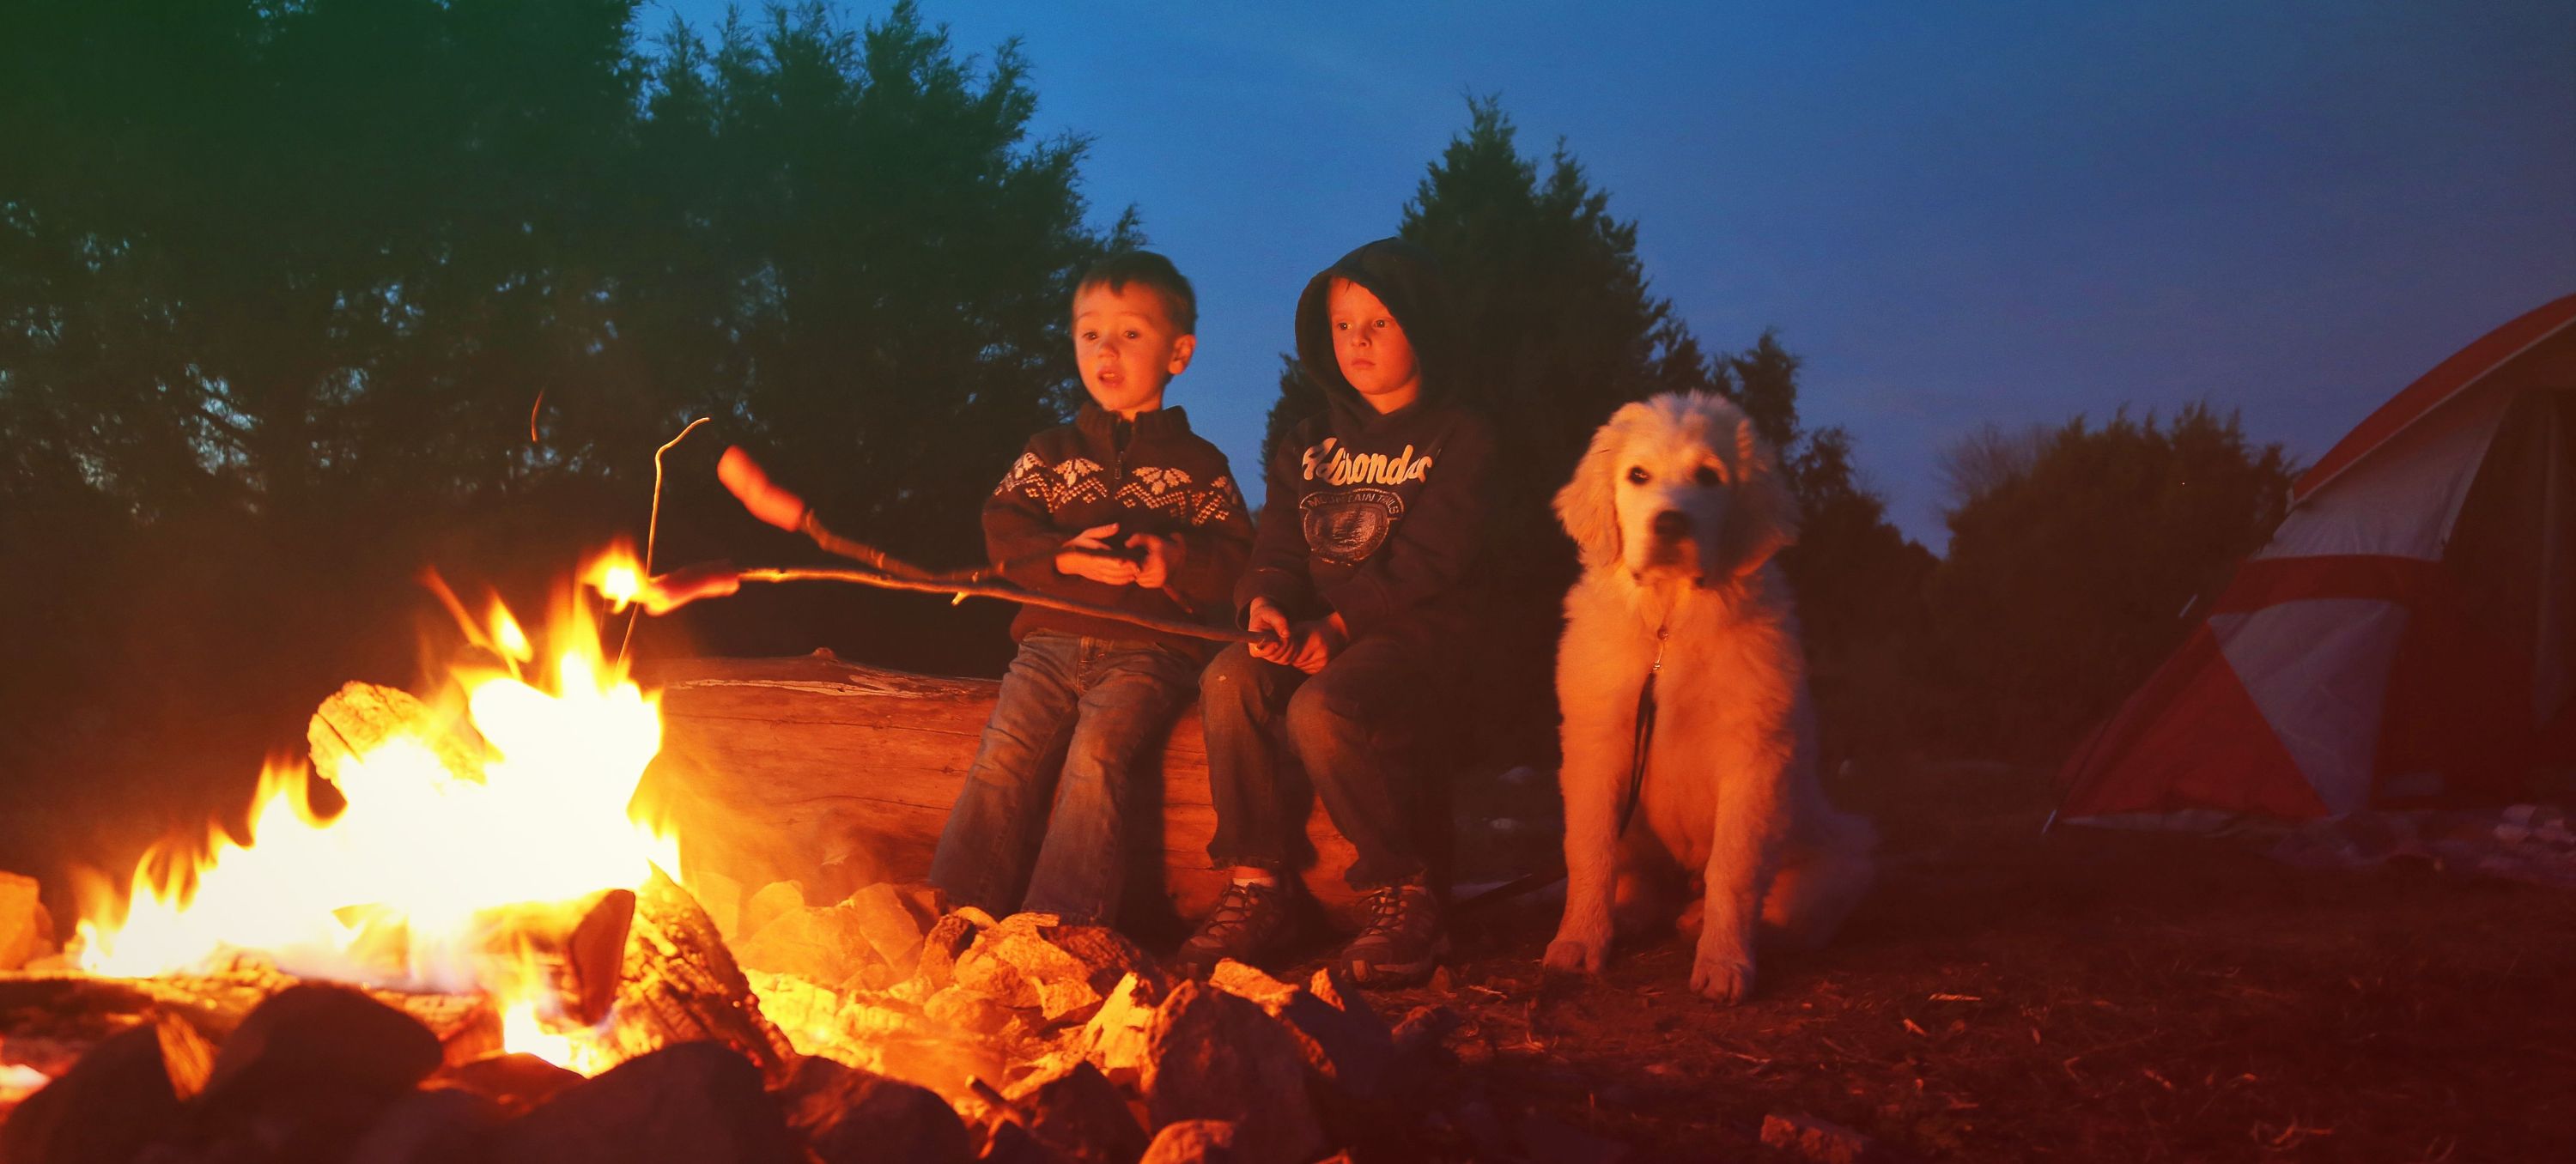 kids and dog at campfire